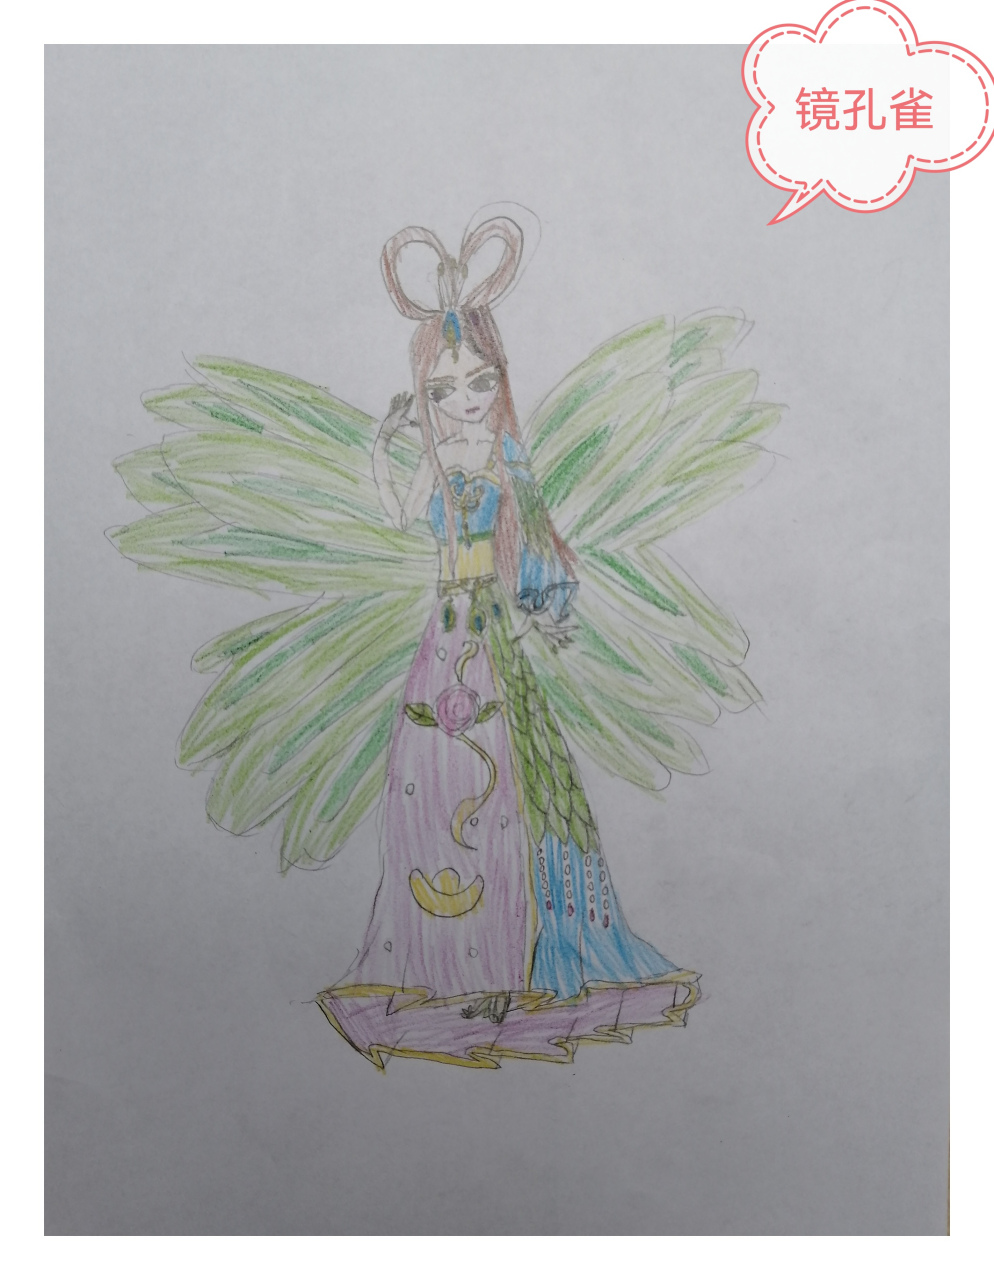 宝豆小朋友画的叶罗丽镜孔雀,自己给她设计了翅膀和裙子的部分花纹